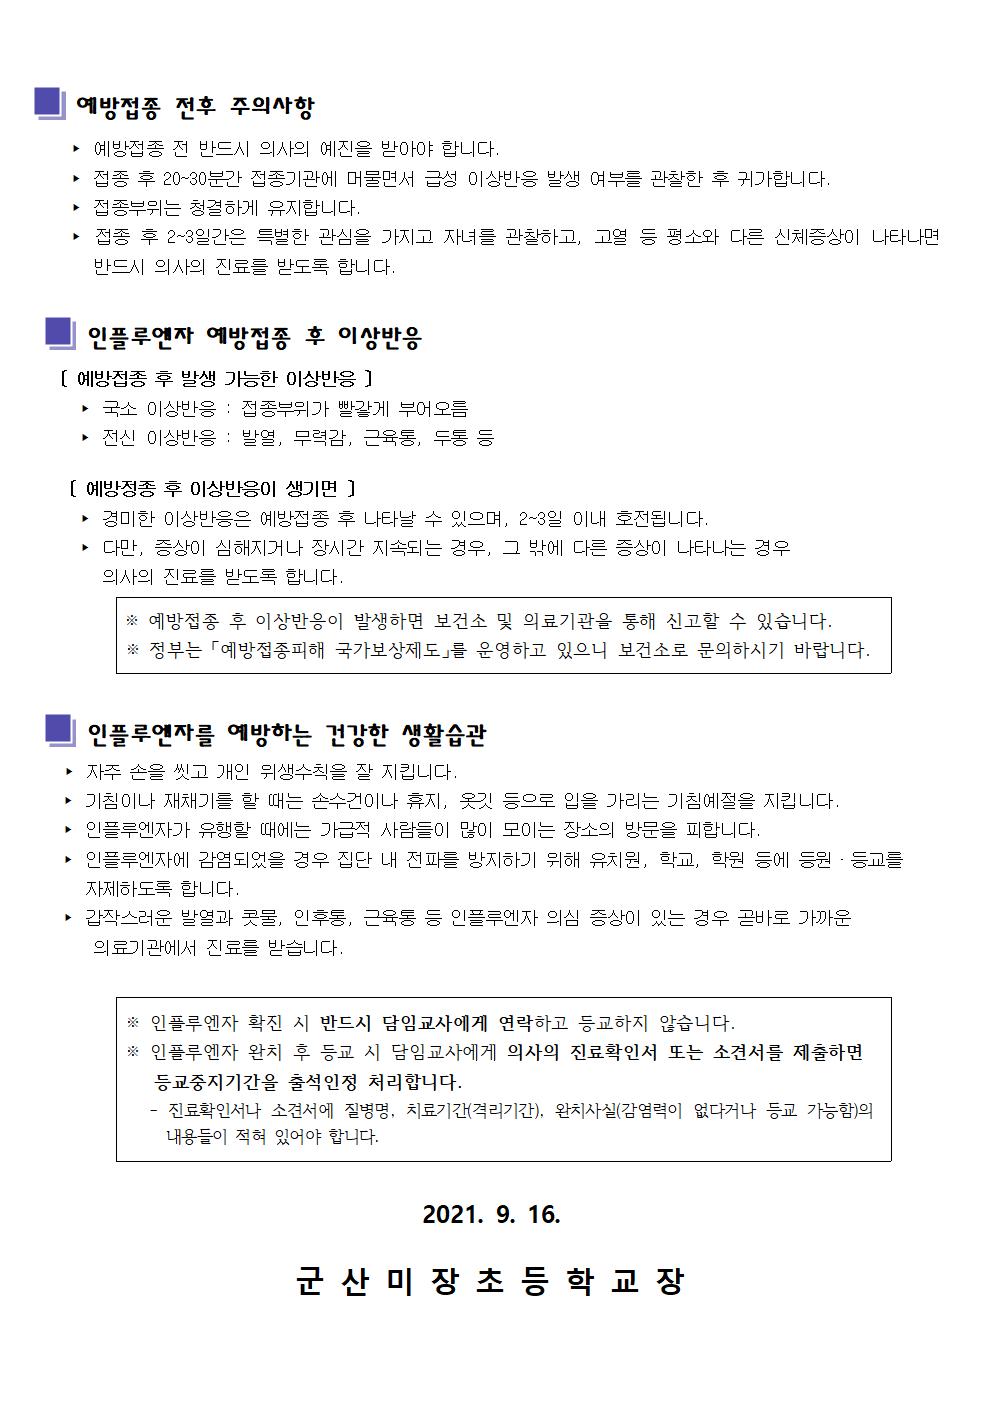 제2021-141호 인플루엔자예방접종 가정통신문002